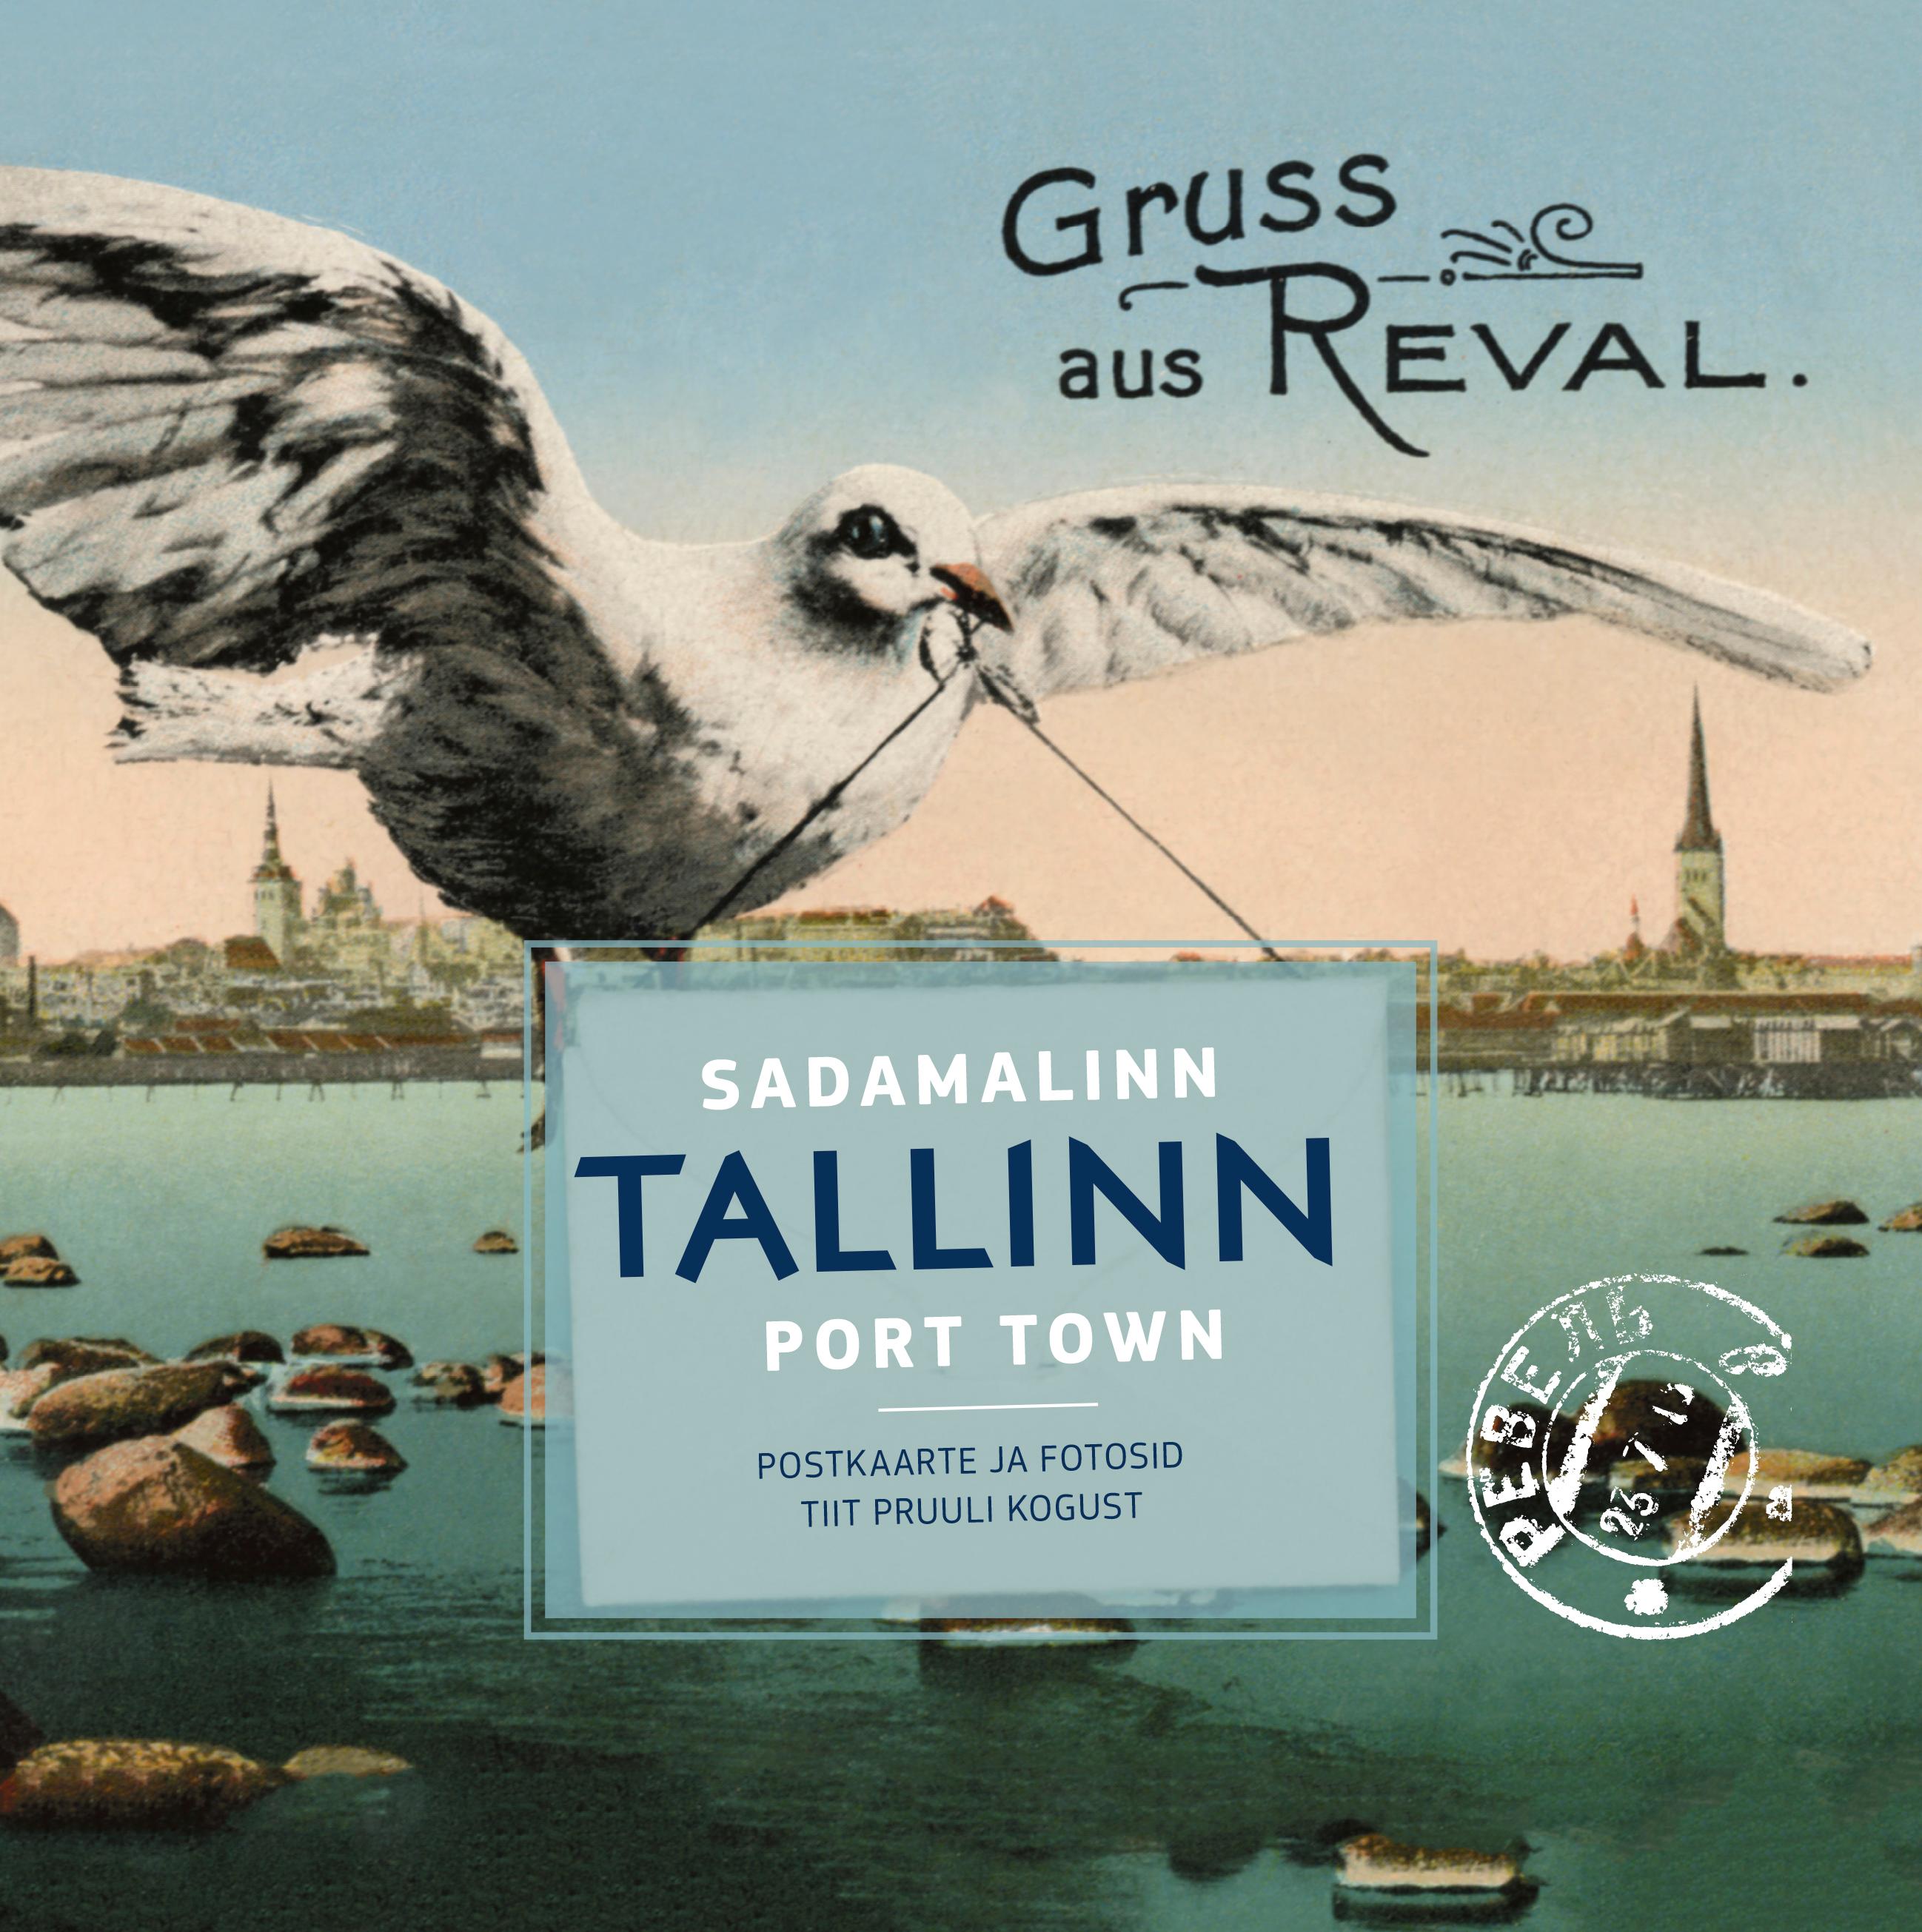 Sadamalinn Tallinn. Postkaarte ja fotosid Tiit Pruuli kogust